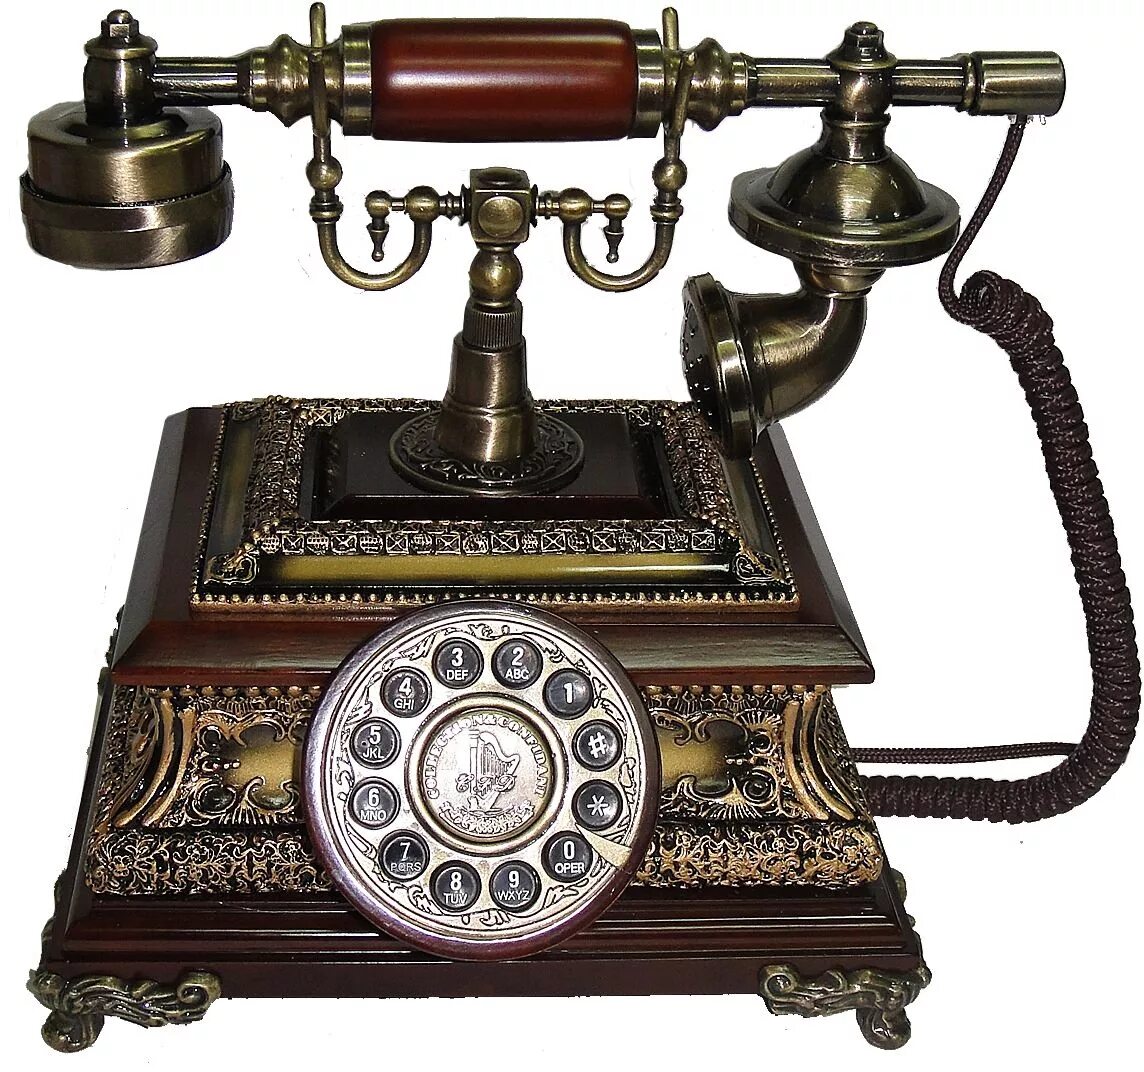 Картинки телефонных аппаратов. Старинный телефонный аппарат. Телефонный аппарат ретро. Телефонные аппараты в стиле ретро. Ретро телефон.